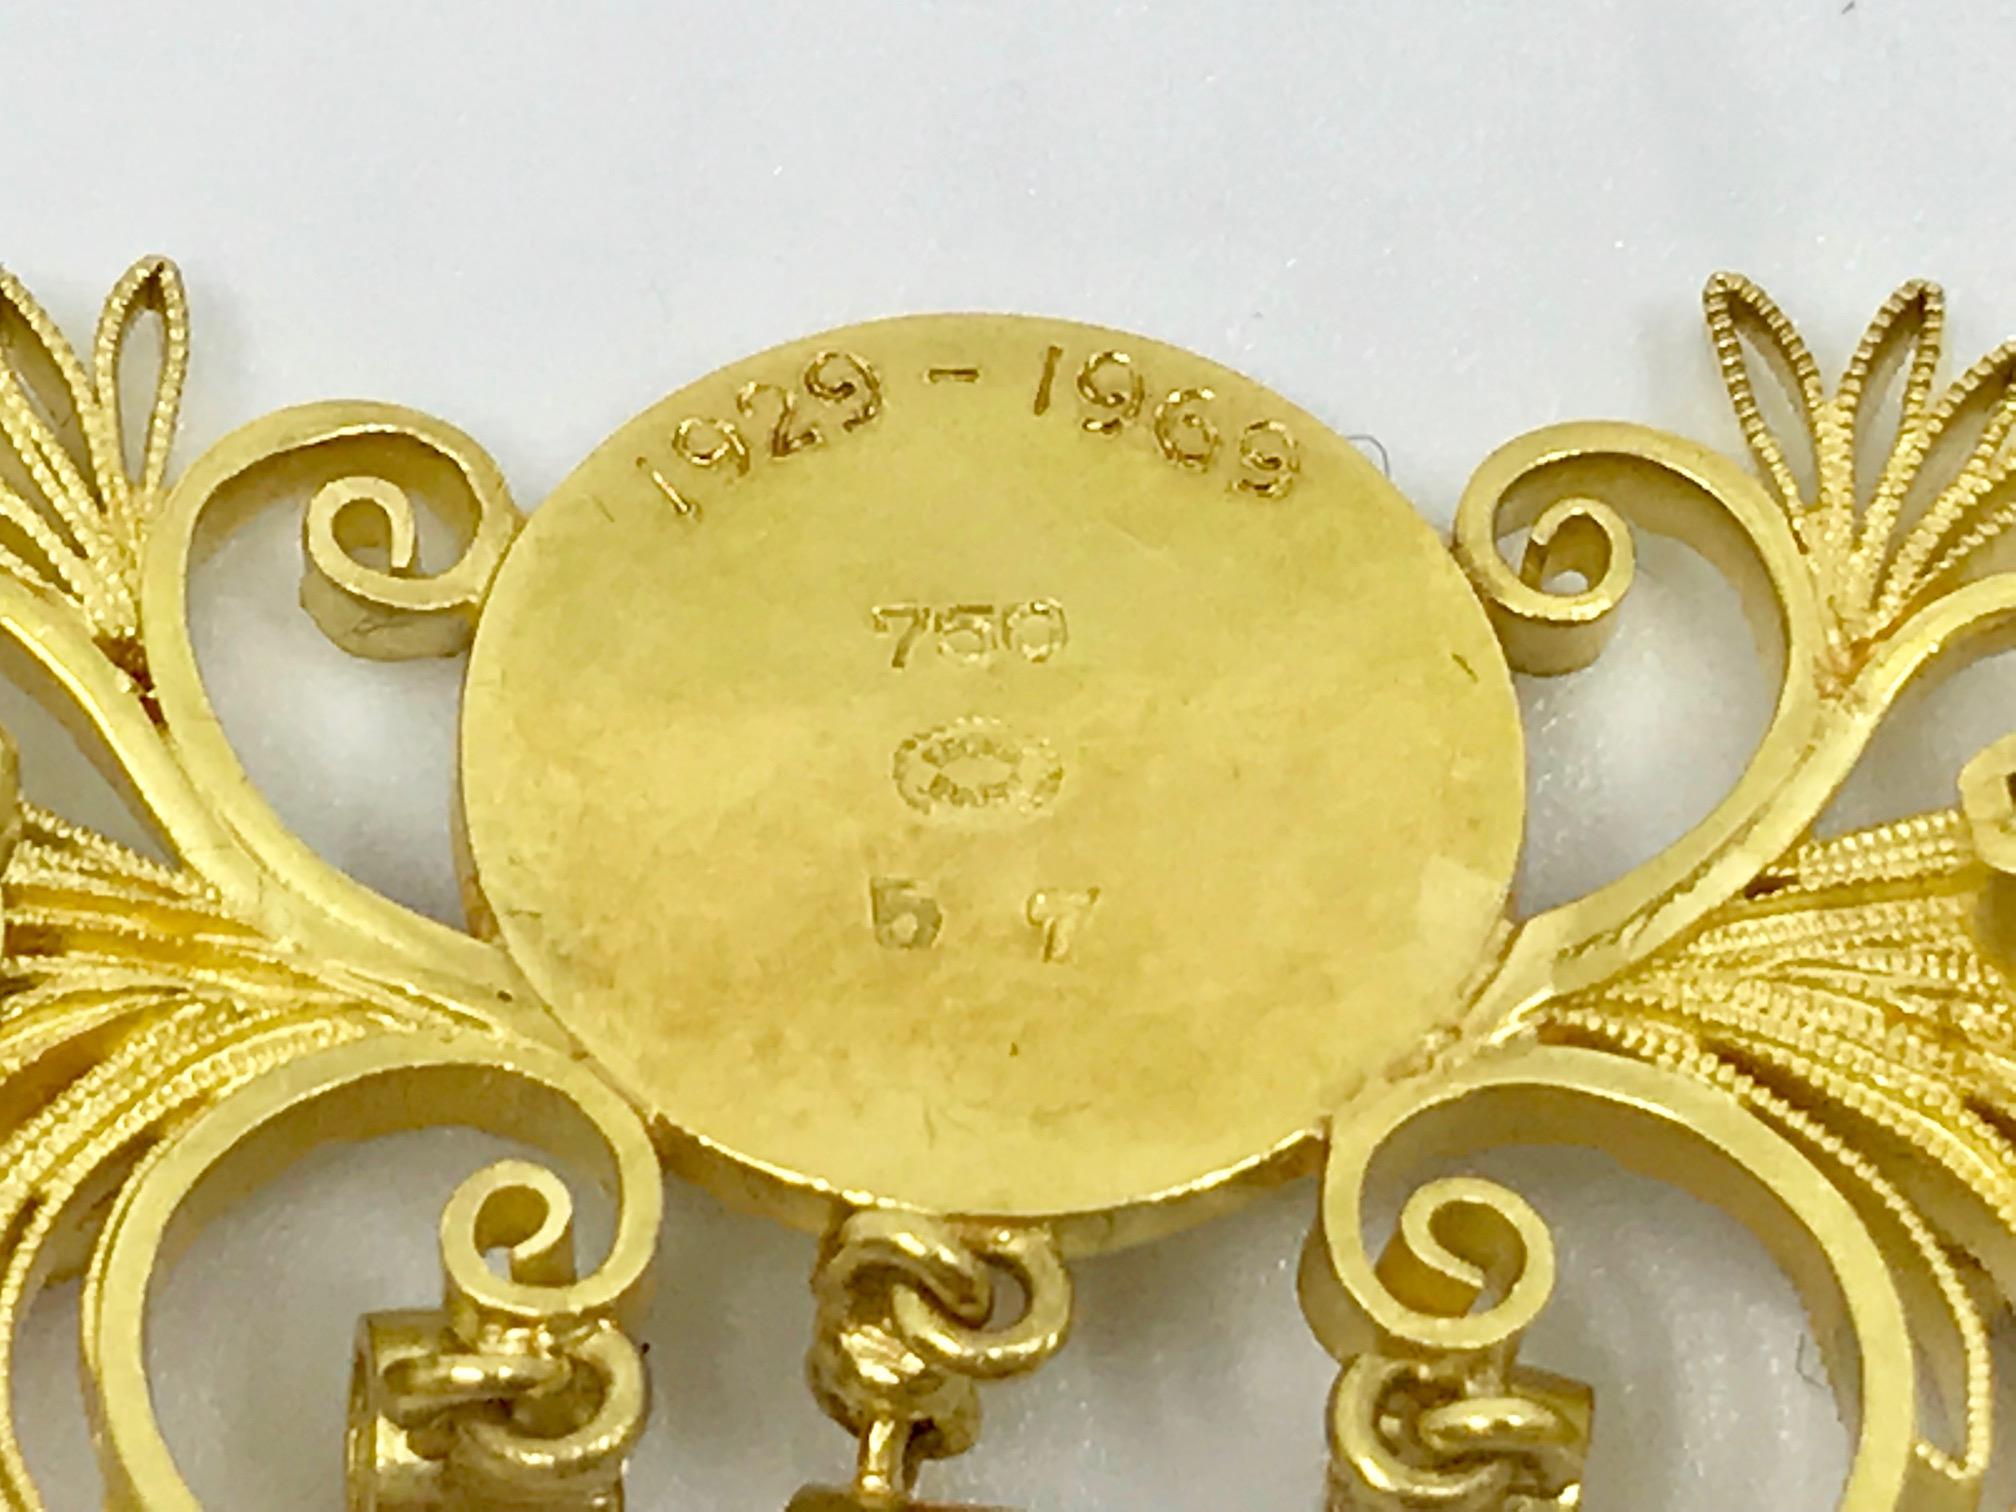 Vintage Georg Jensen 18 Karat Gold Brooch #57 For Sale 1